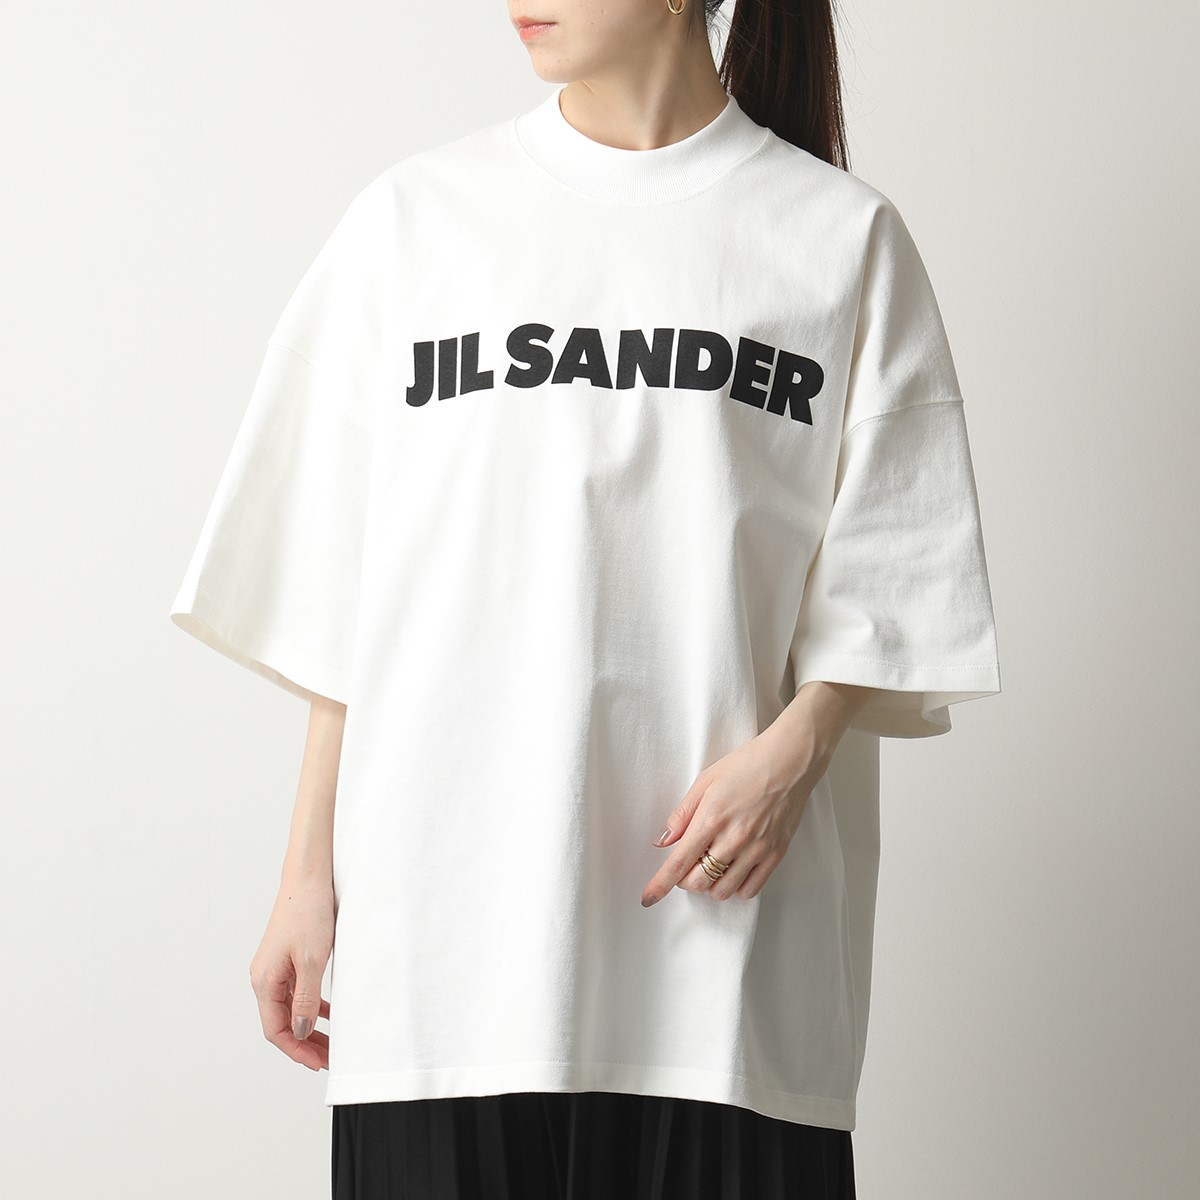 JIL SANDAR【ジルサンダー ブラウス グレージュ40】 日本卸値 www